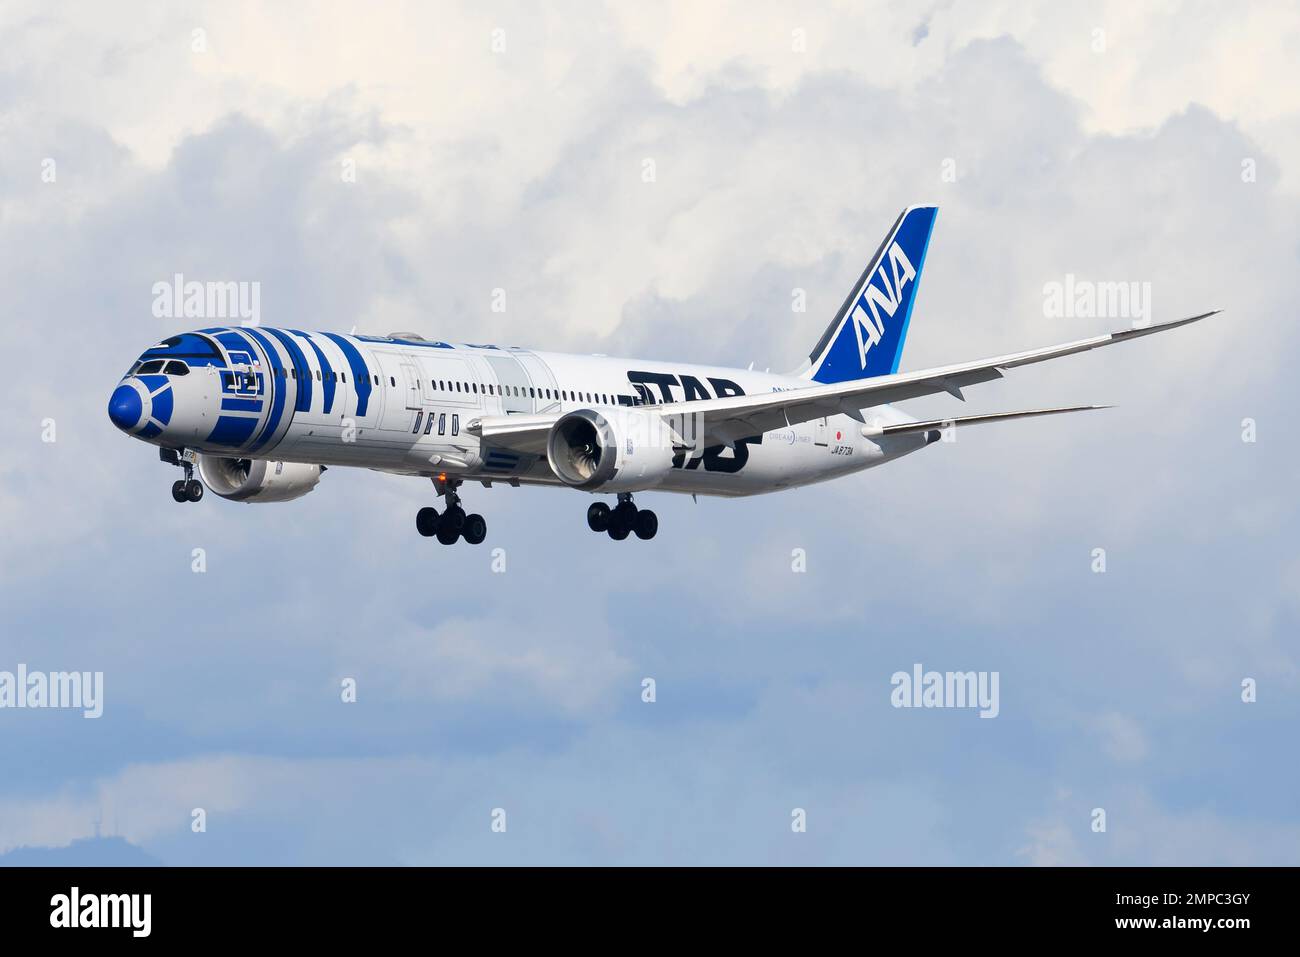 ANA Boeing 787-9 mit Star Wars-Design mit R2-D2. Flugzeug von All Nippon Airways 787 Dreamliner mit Star Wars Spezial-Lackierung R2D2. Stockfoto